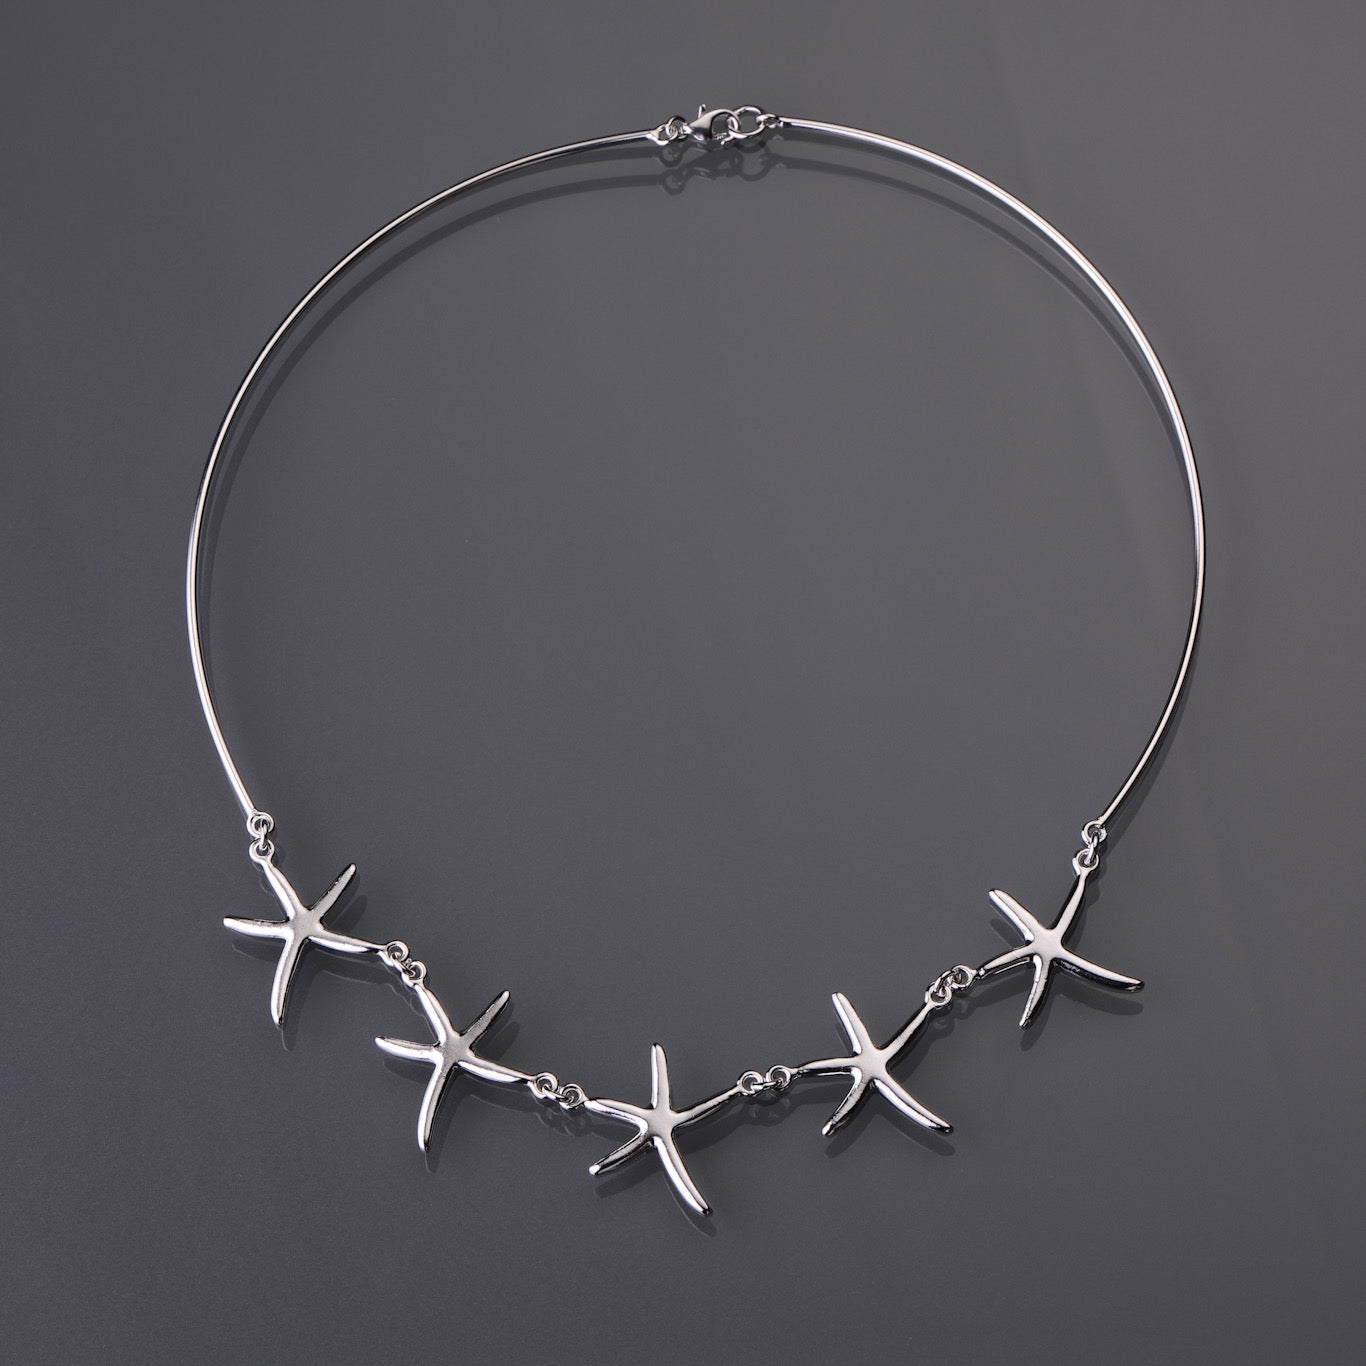 Sea star necklace